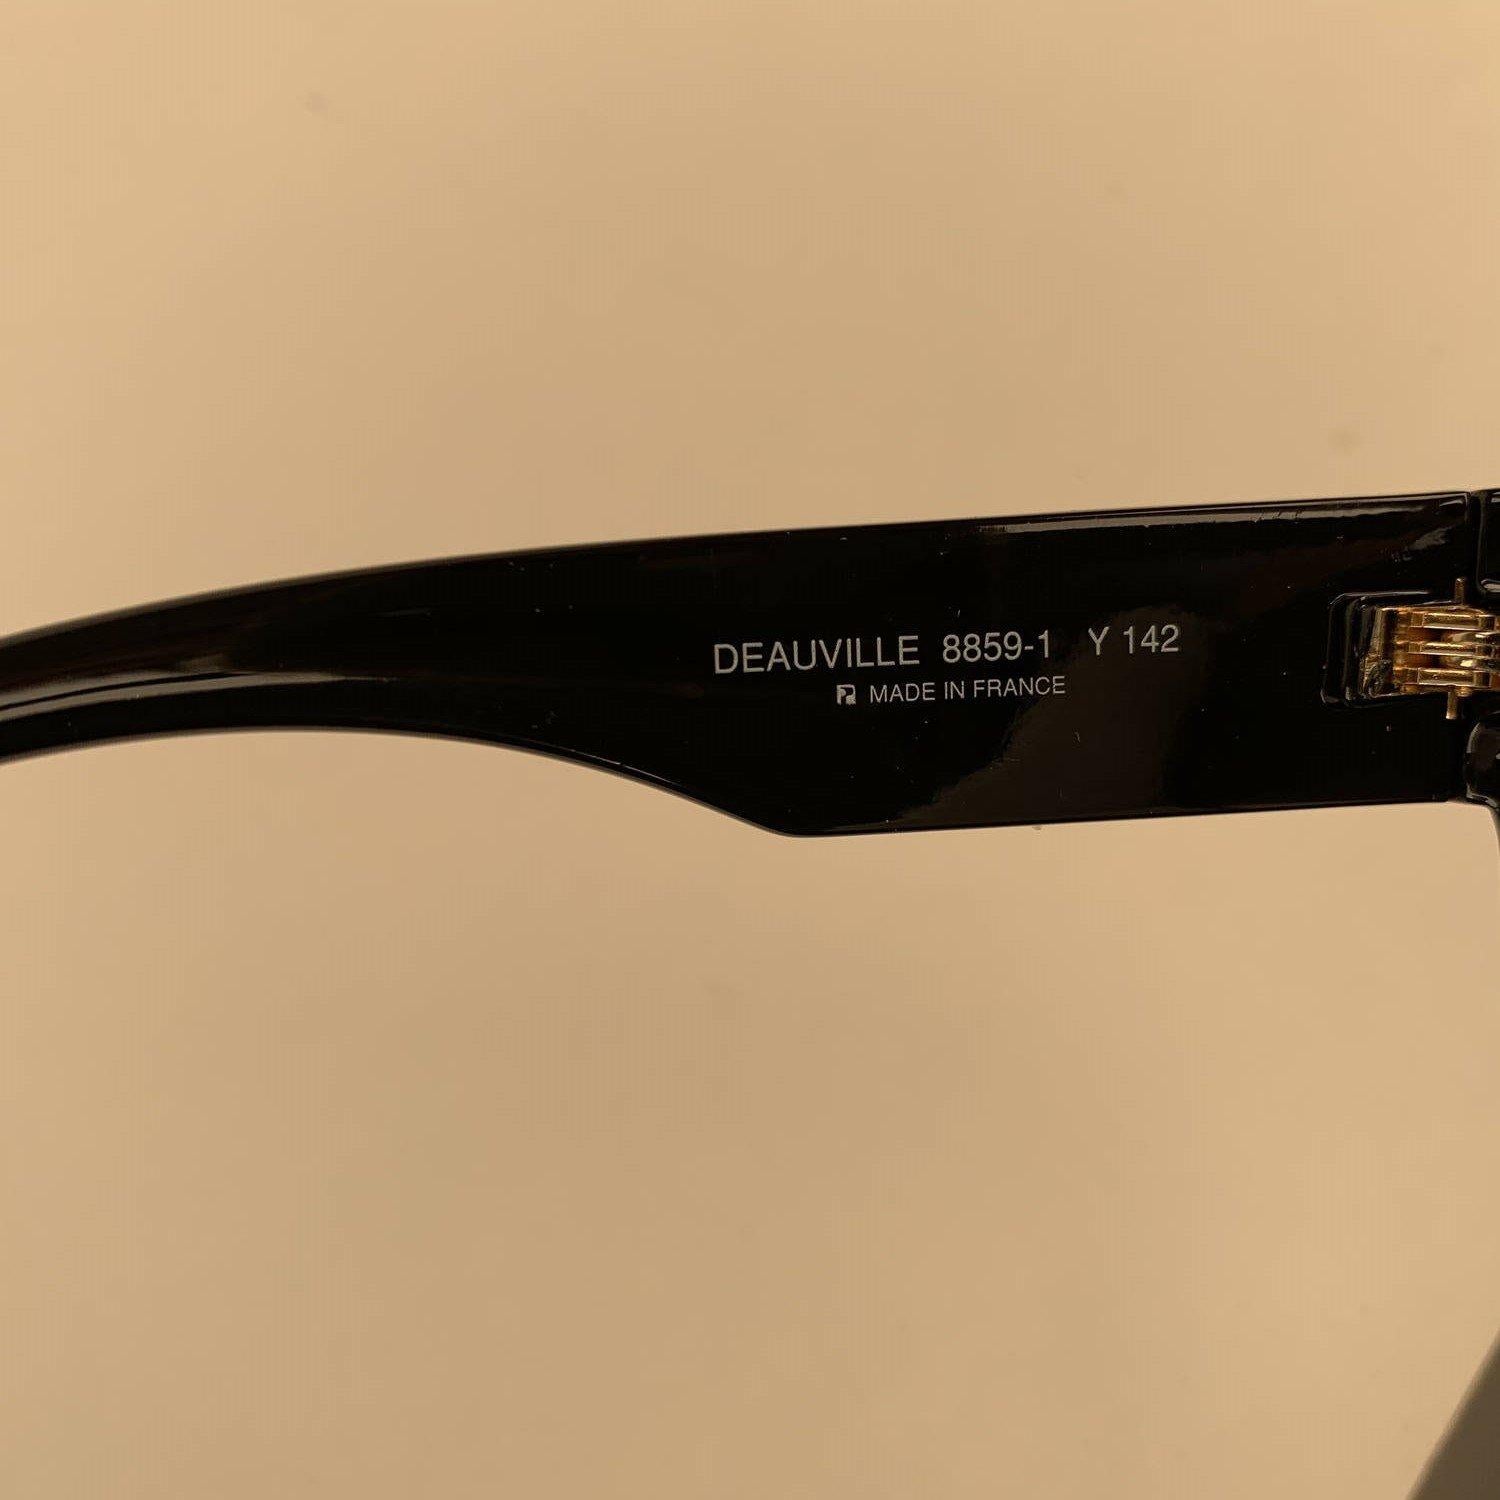 Yves Saint Laurent Vintage Black Sunglasses Deauville 8859-1 Y 142 2